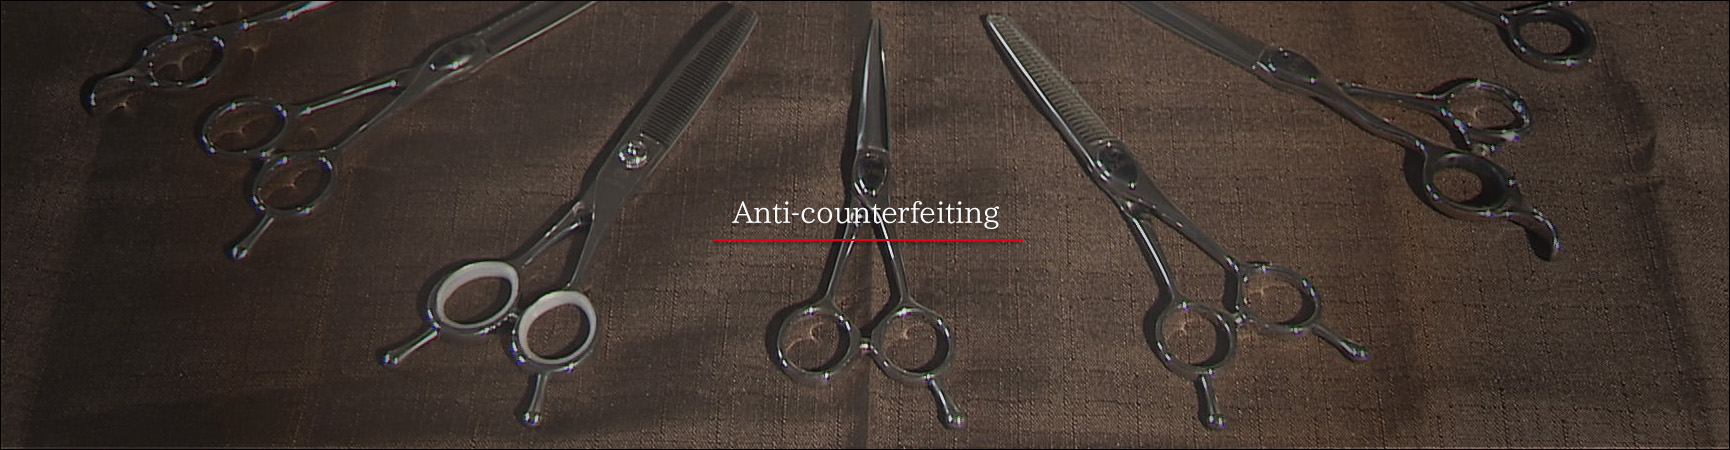 Anti-counterfeiting